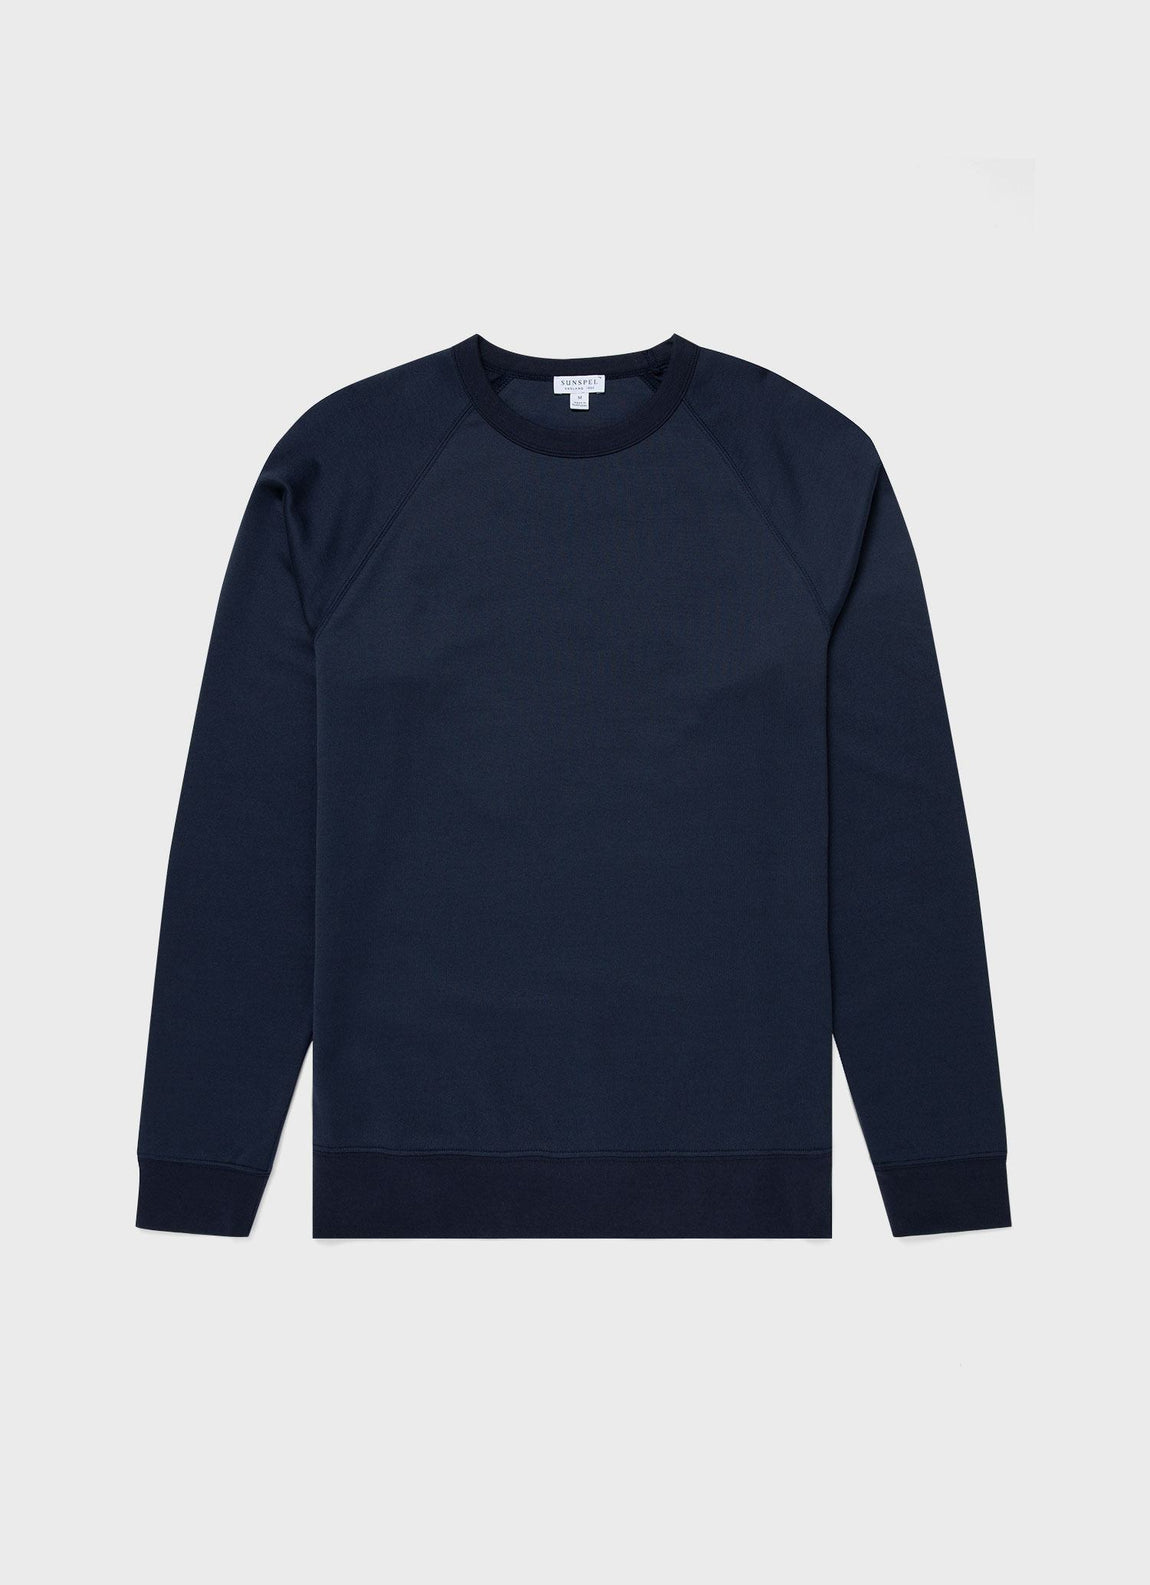 Arlet Seam Detail Sweatshirt, Ocean Blue